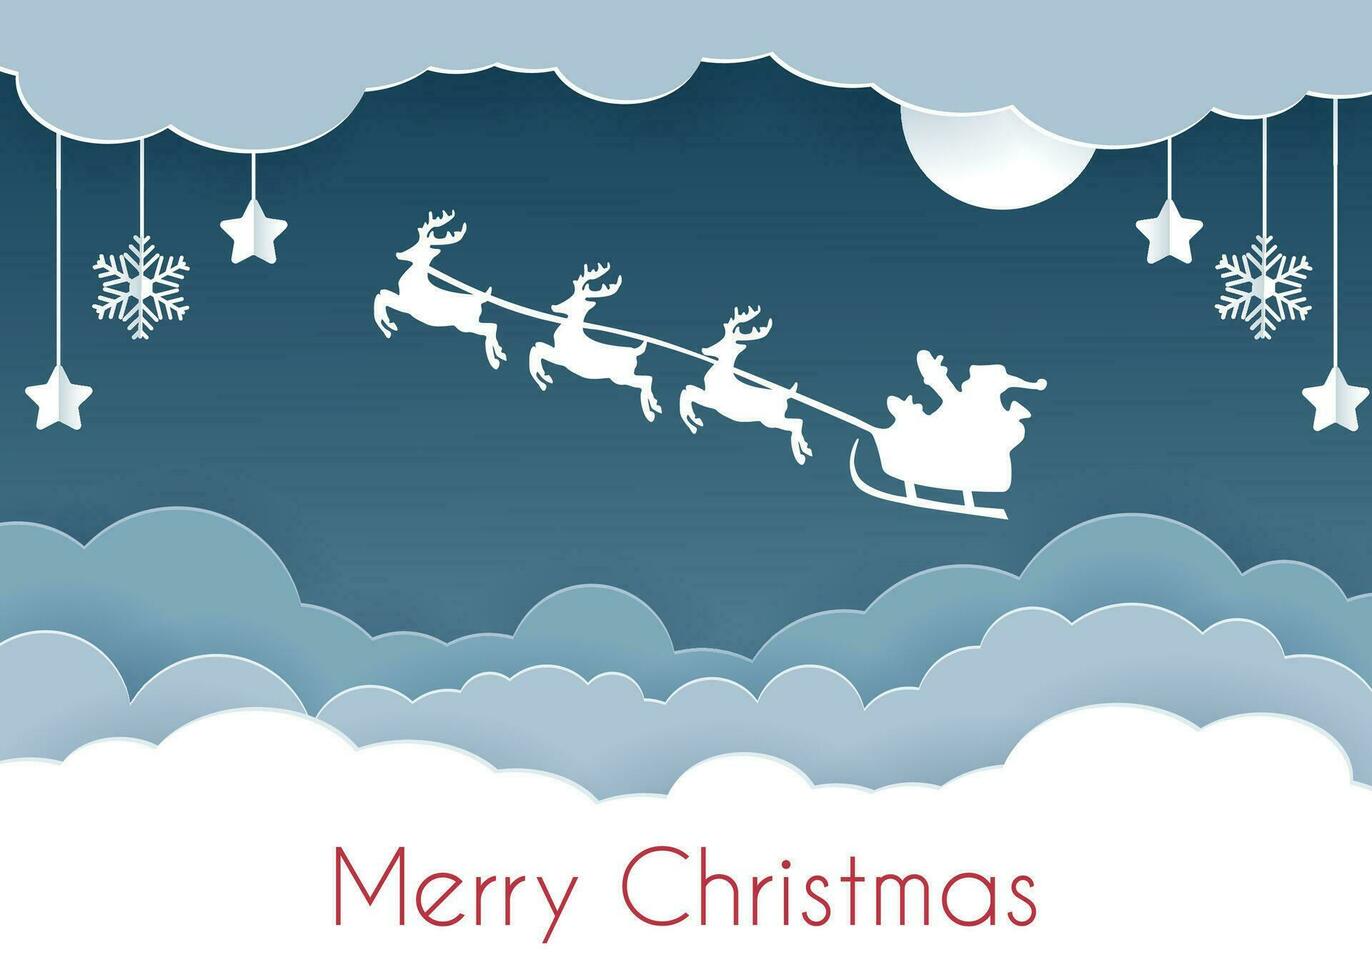 rendier team met de kerstman in de nacht lucht bovenstaand de wolken. Kerstmis kaart in papier besnoeiing stijl .papier wolken vector